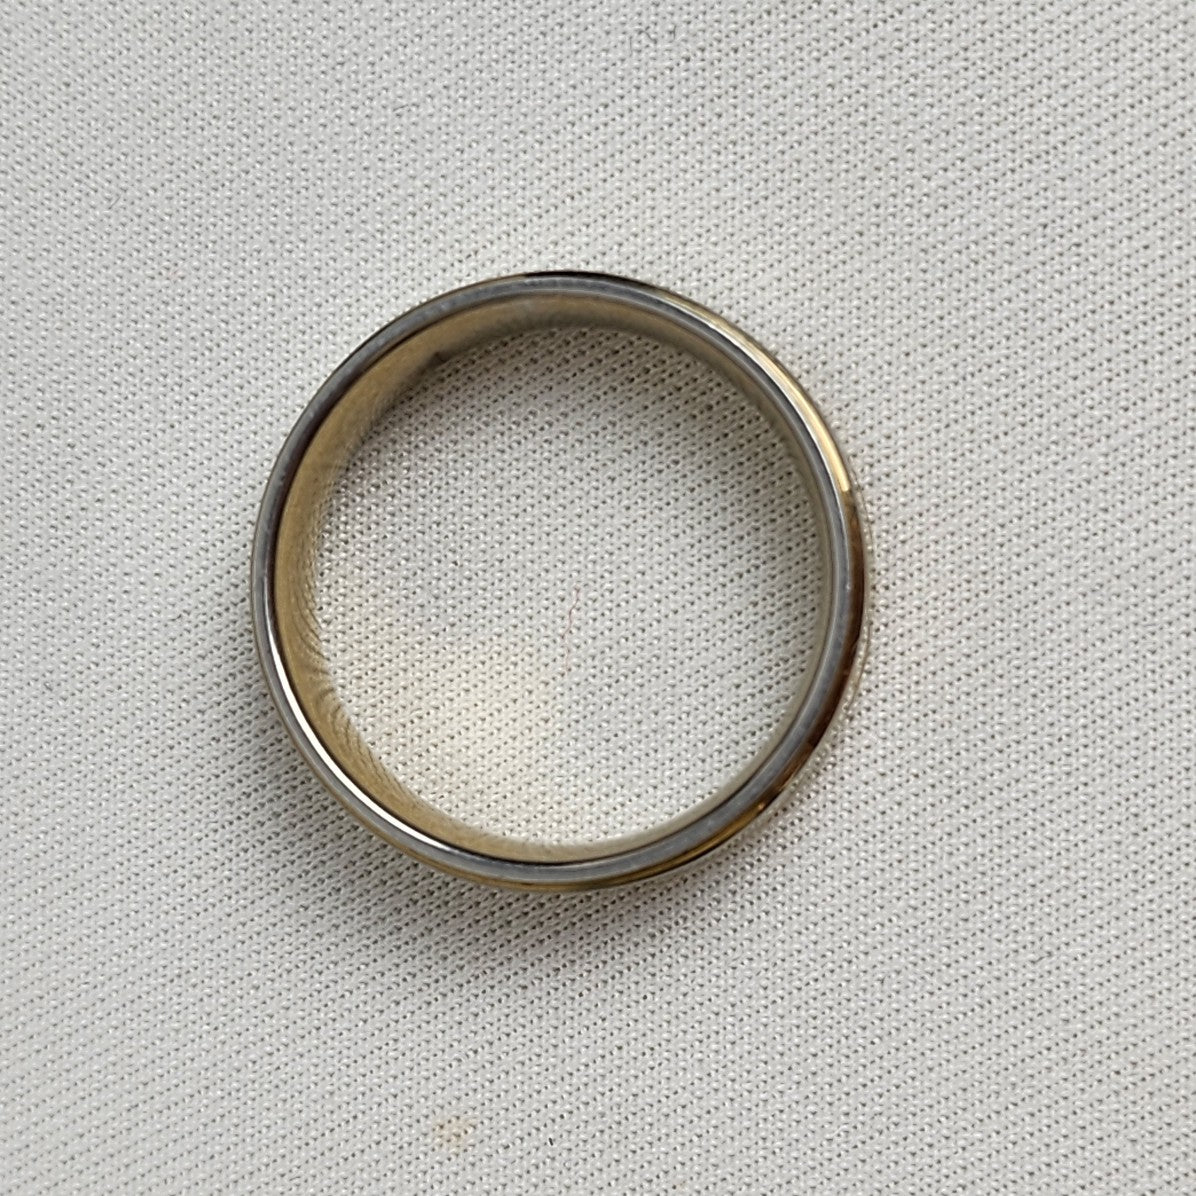 Gold Tone Etched Leaf Design Ring Size 8.5